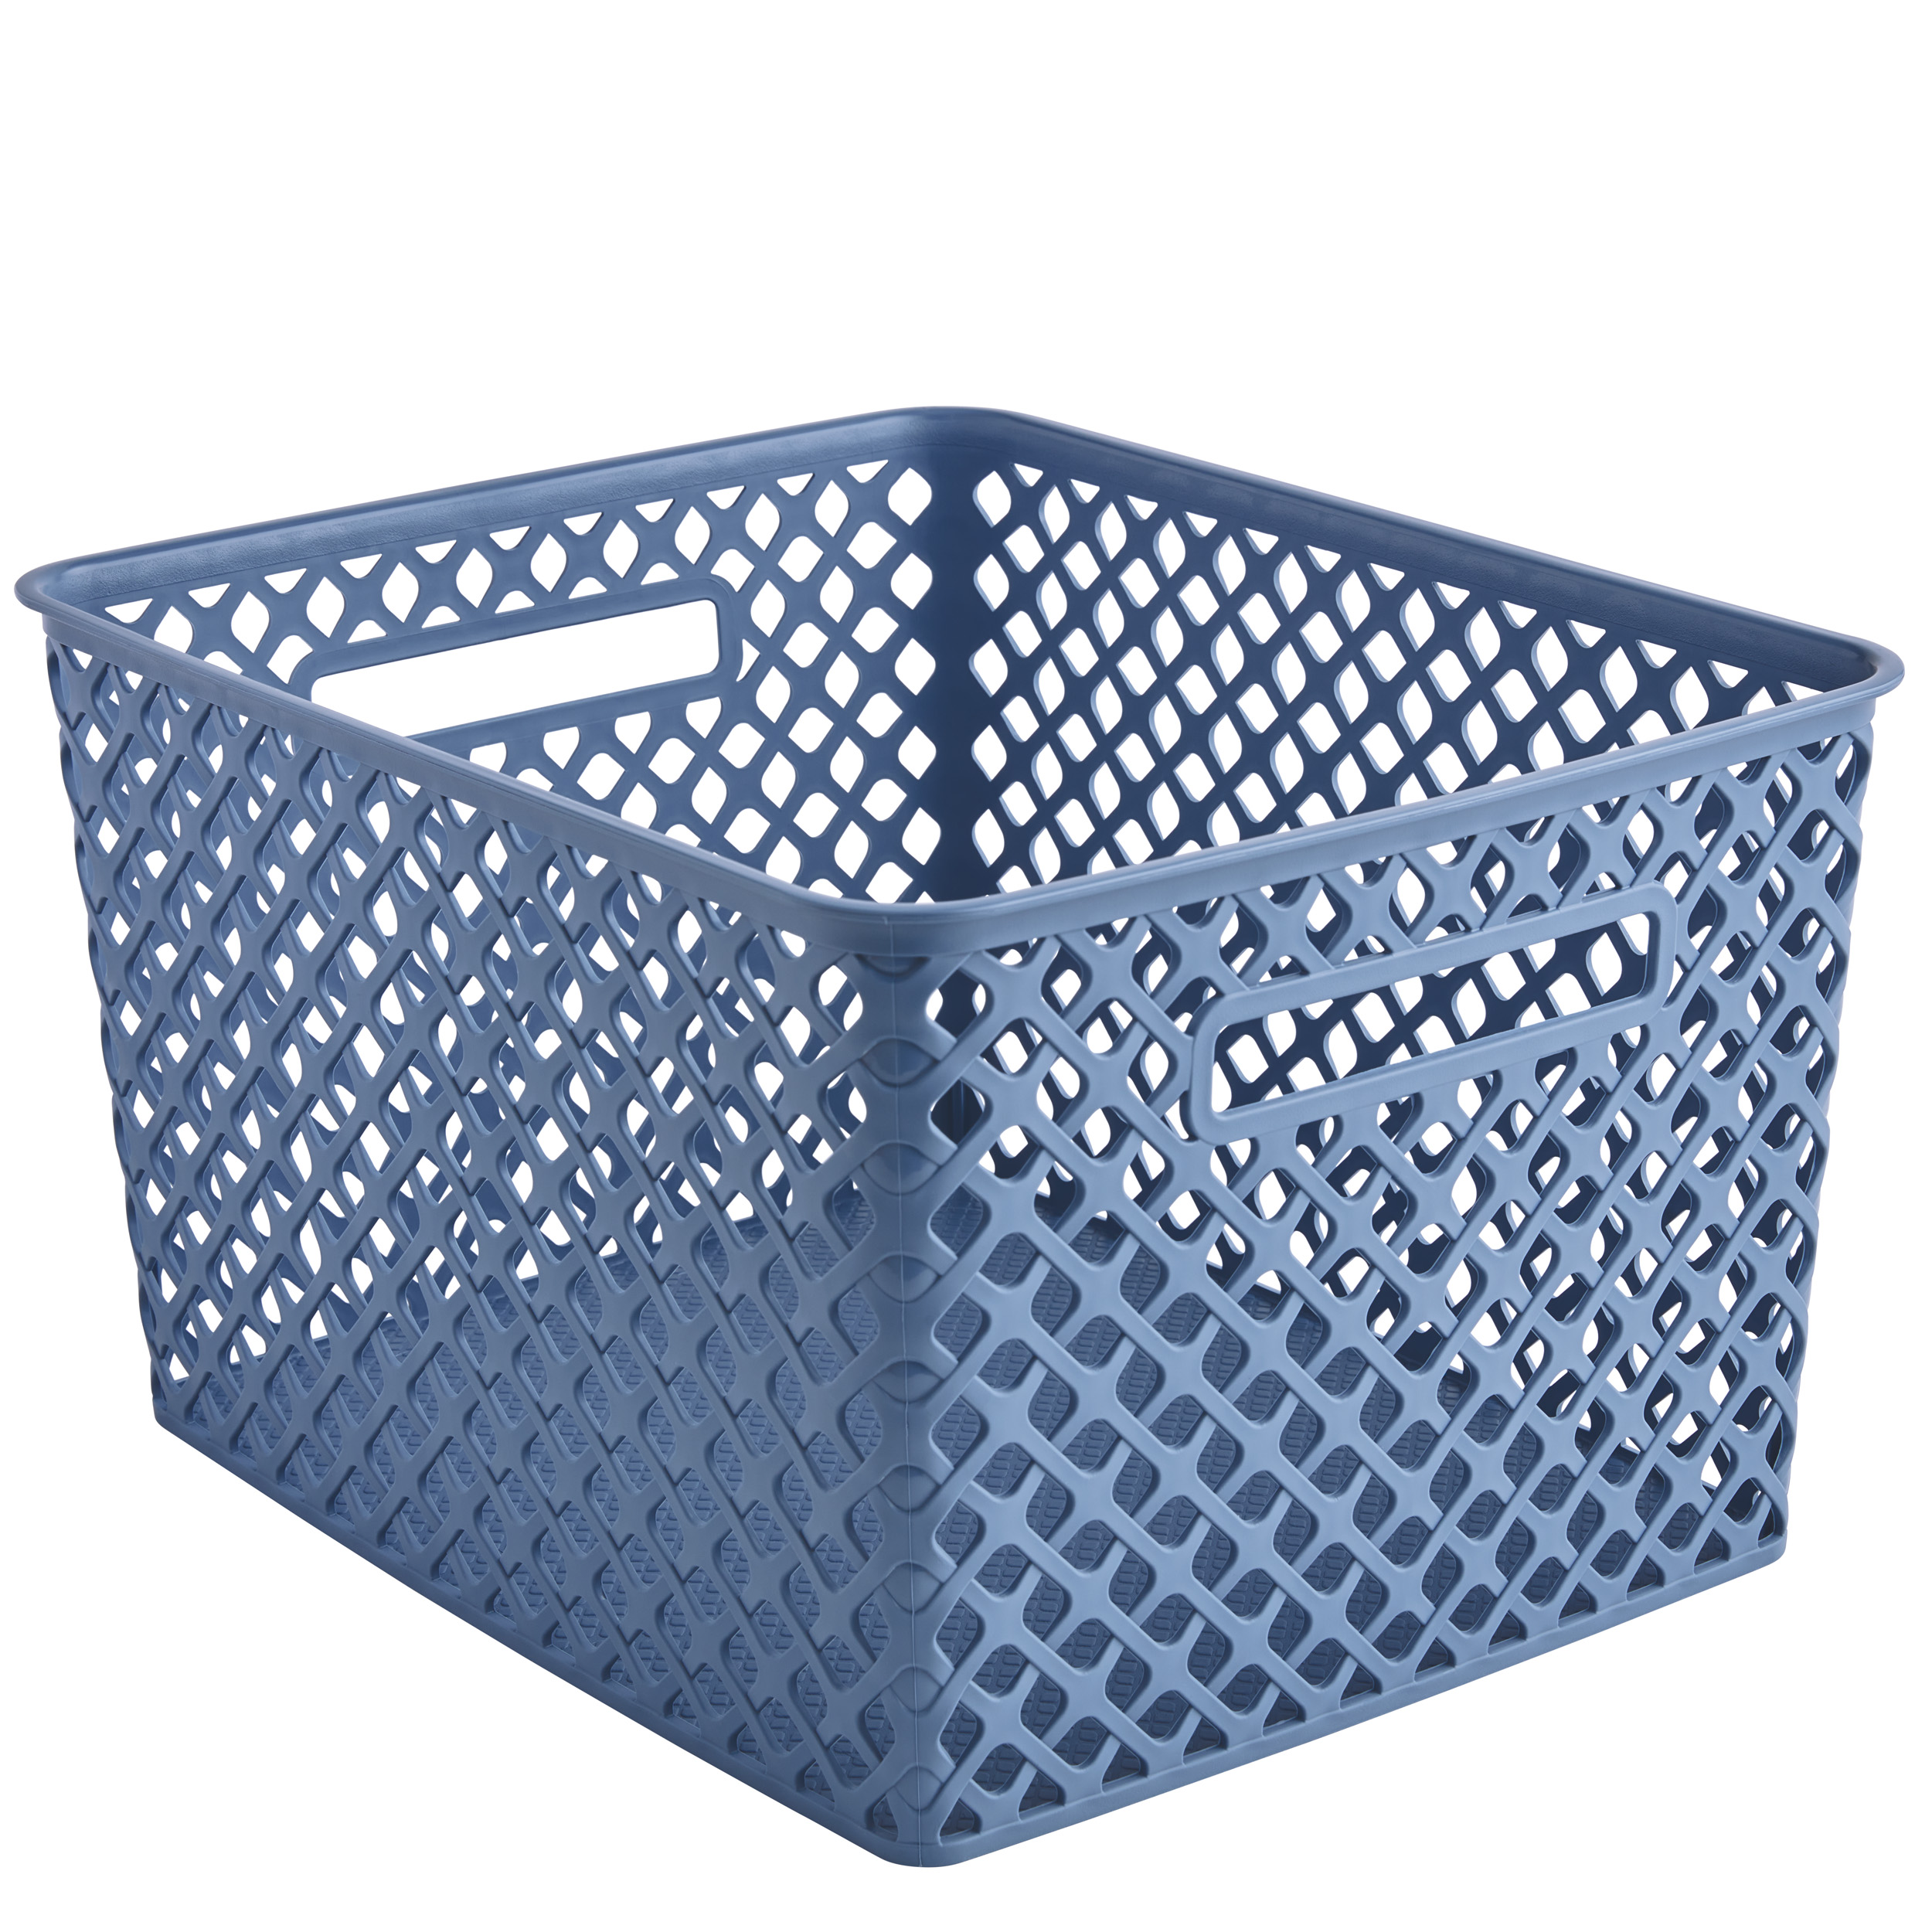 Mainstays Large Blue Decorative Storage Basket - image 3 of 5